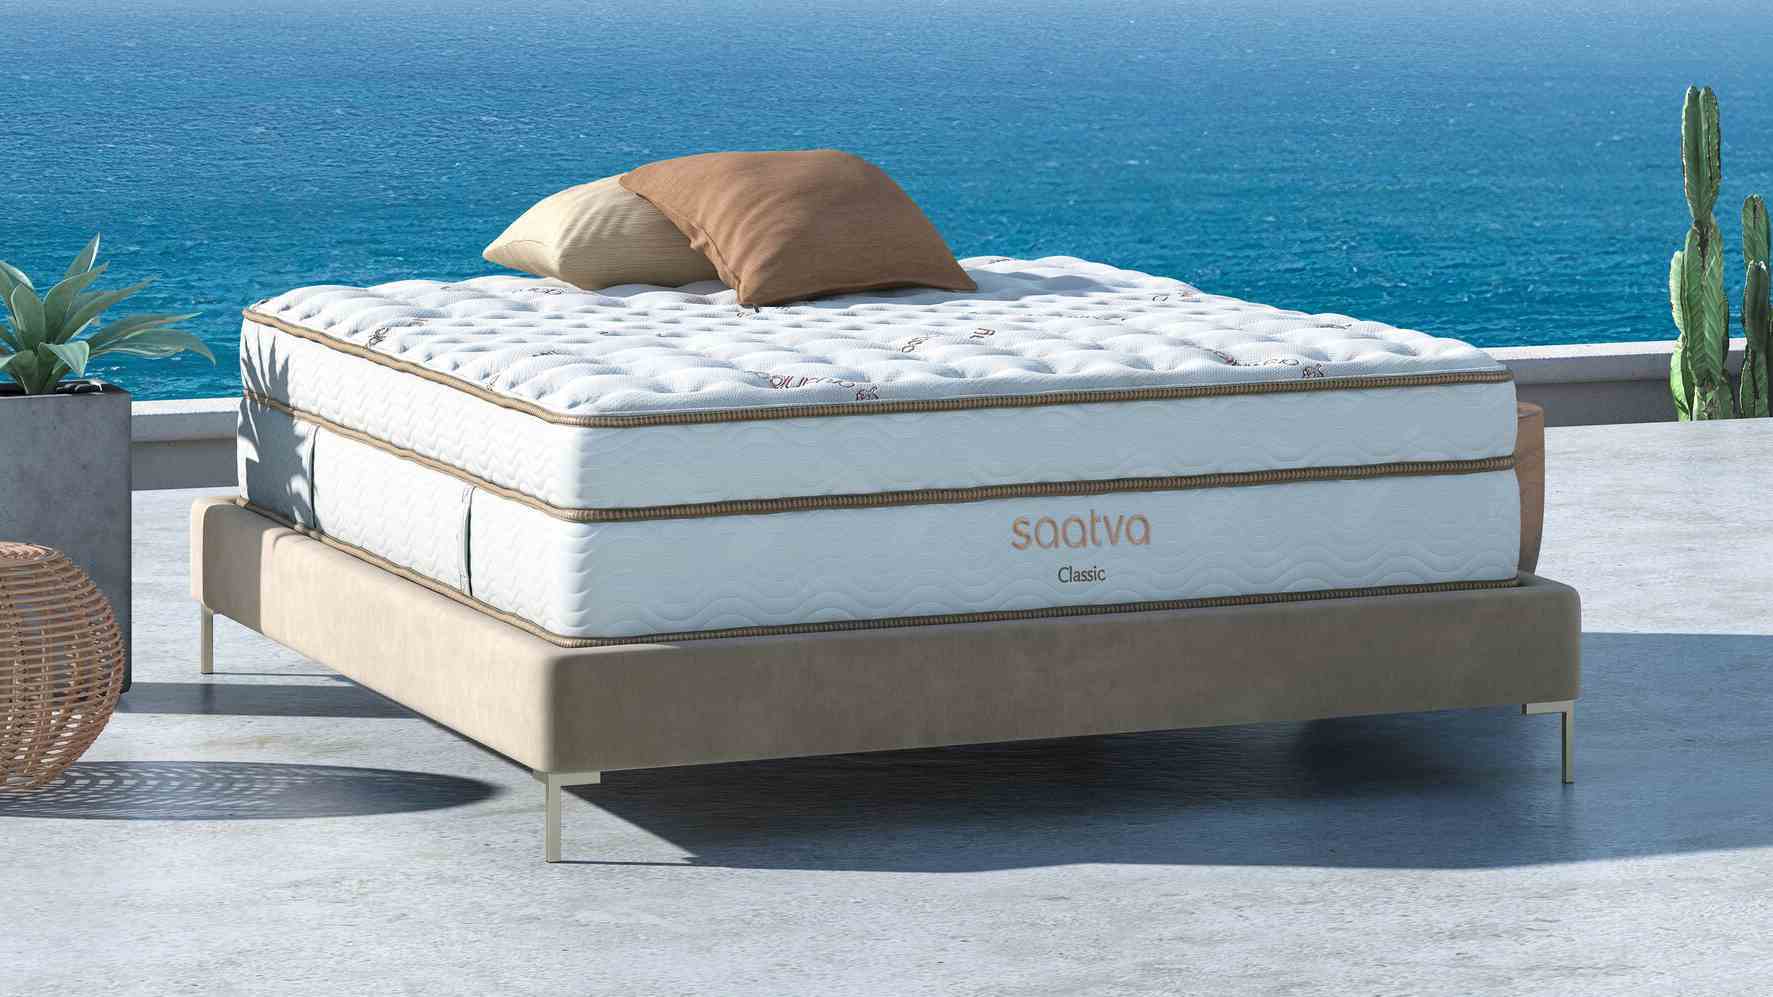 Saatva Classic yatak, masmavi bir denize karşı dışarıda fotoğraflandı